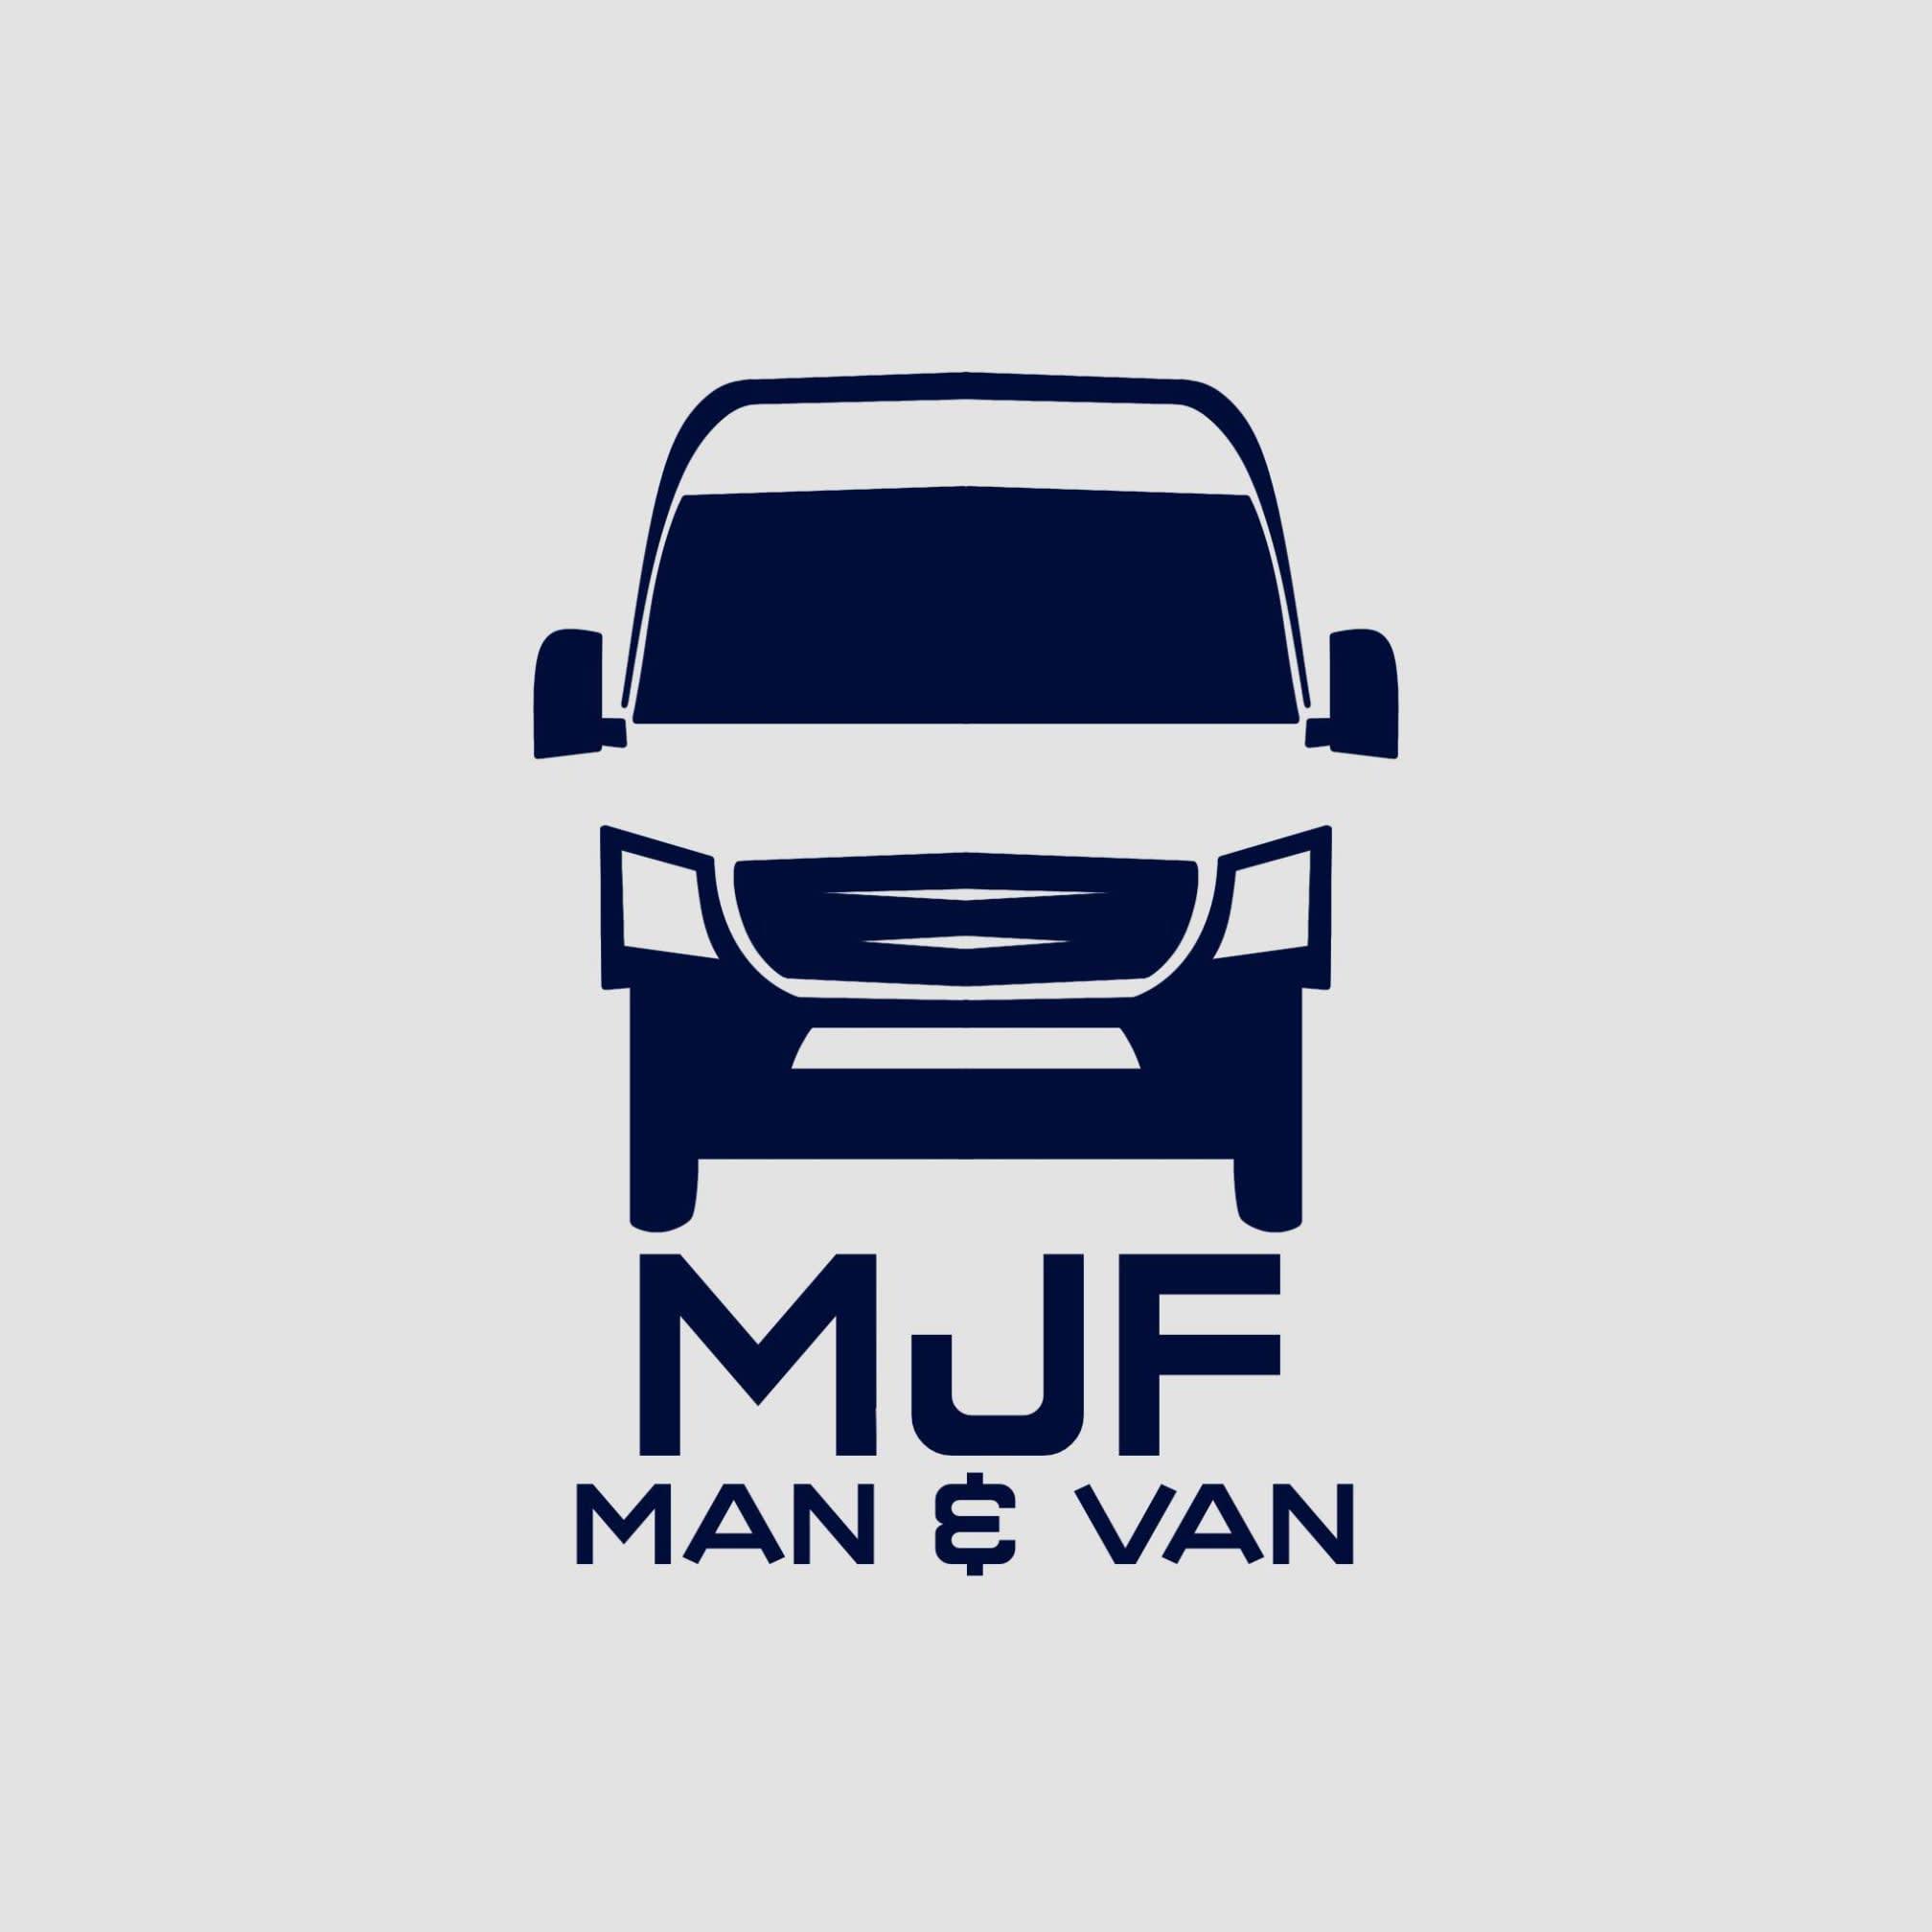 MJF Man&van - Prescot, Merseyside L35 3UW - 07729 899896 | ShowMeLocal.com